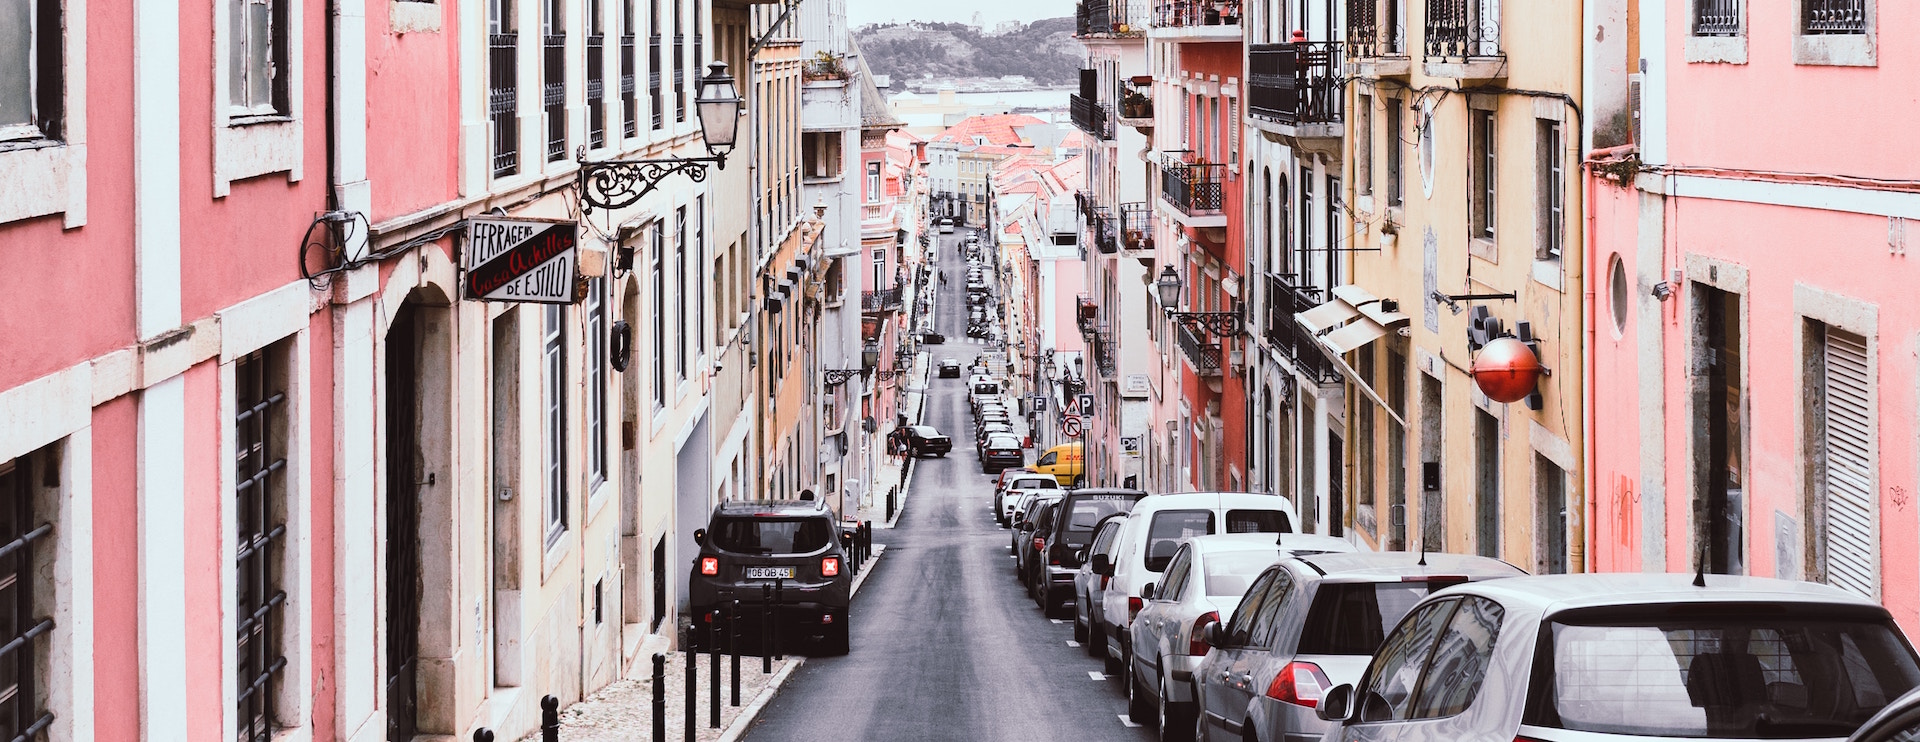 Esta app portuguesa gratuita encontra lugares livres para estacionar o carro